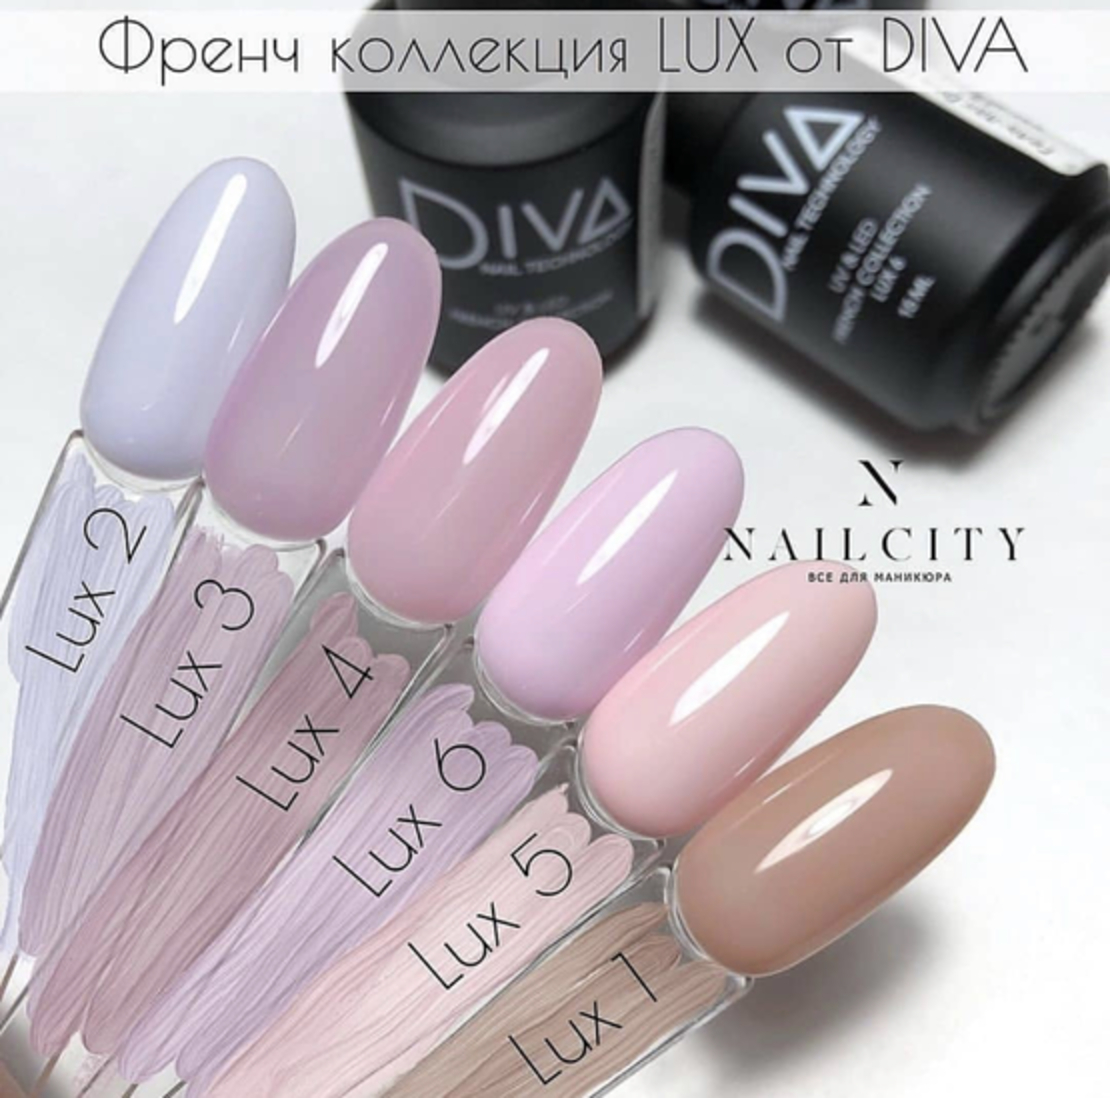 Diva Lux1